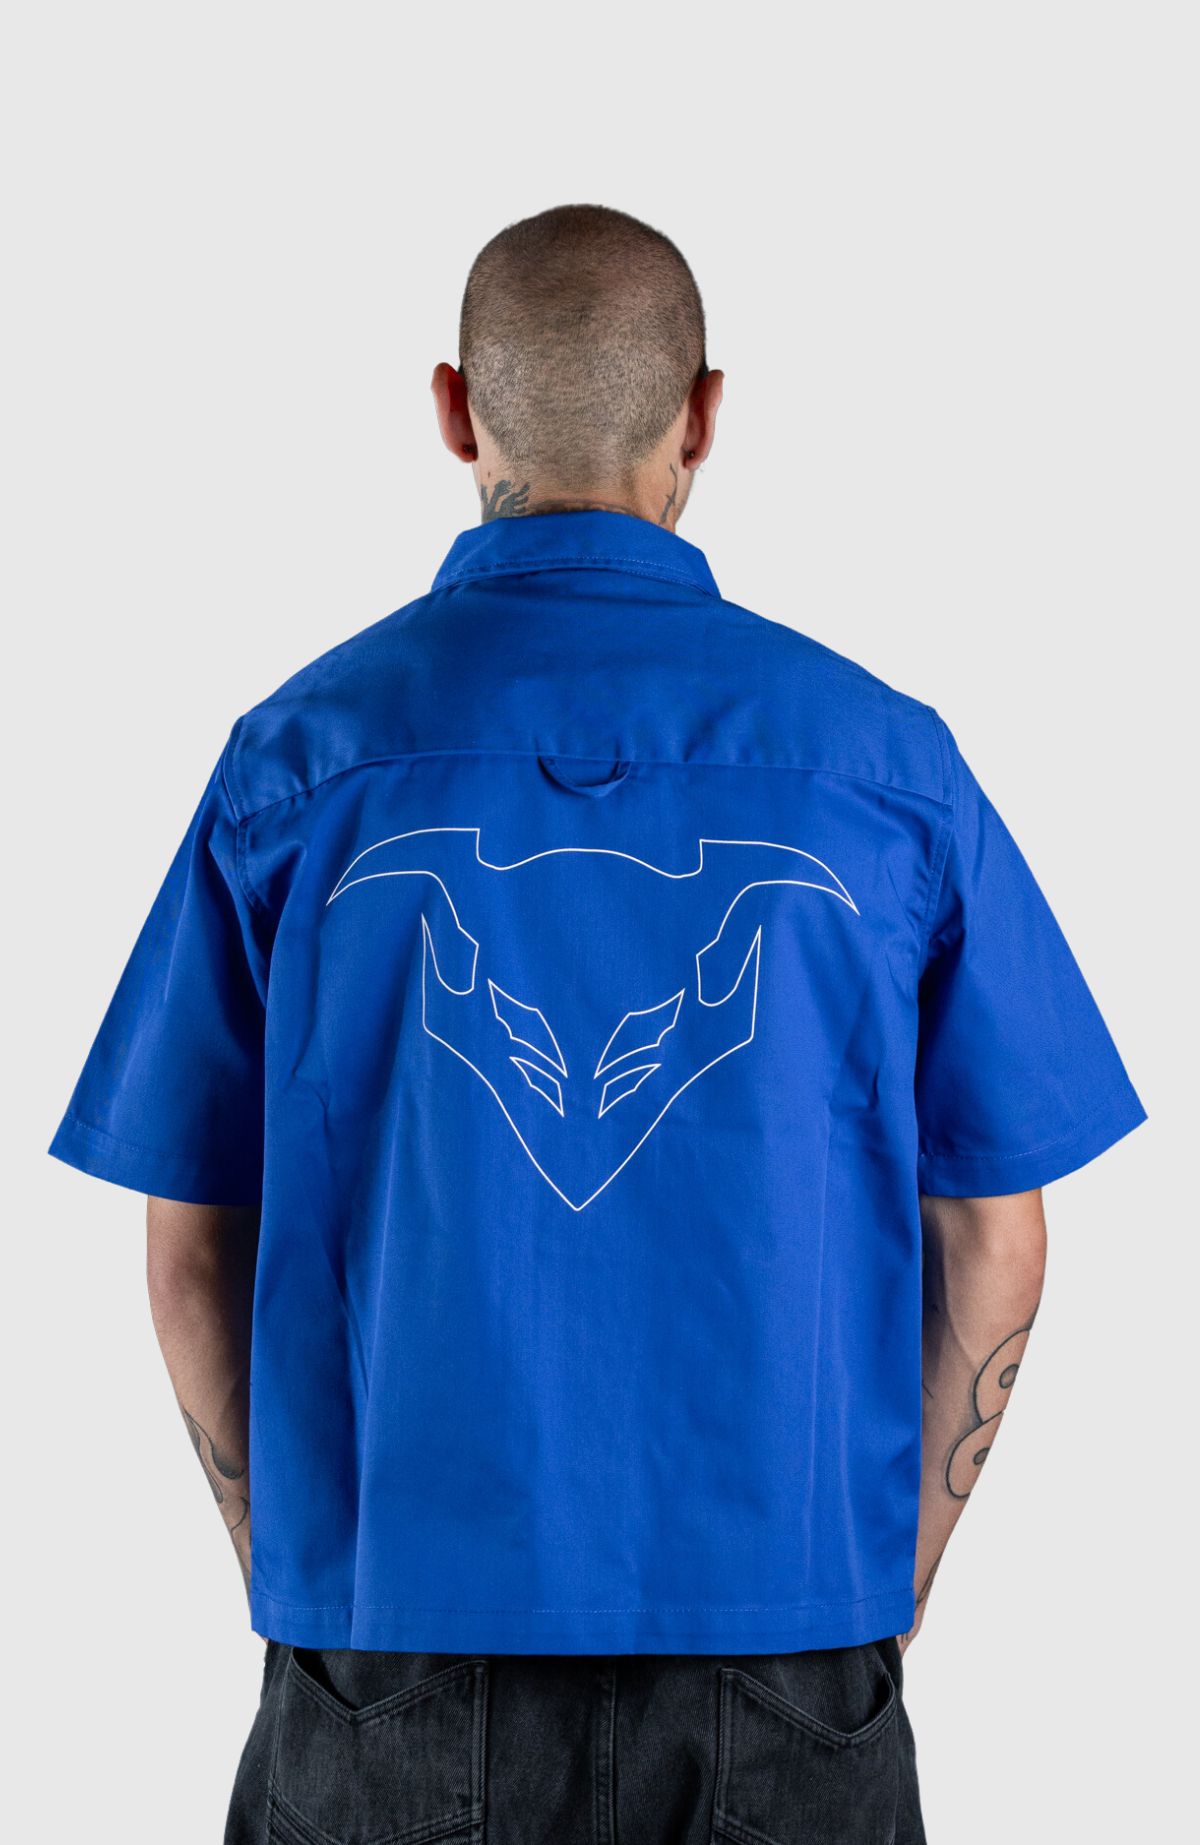 Event Horizon Shirt